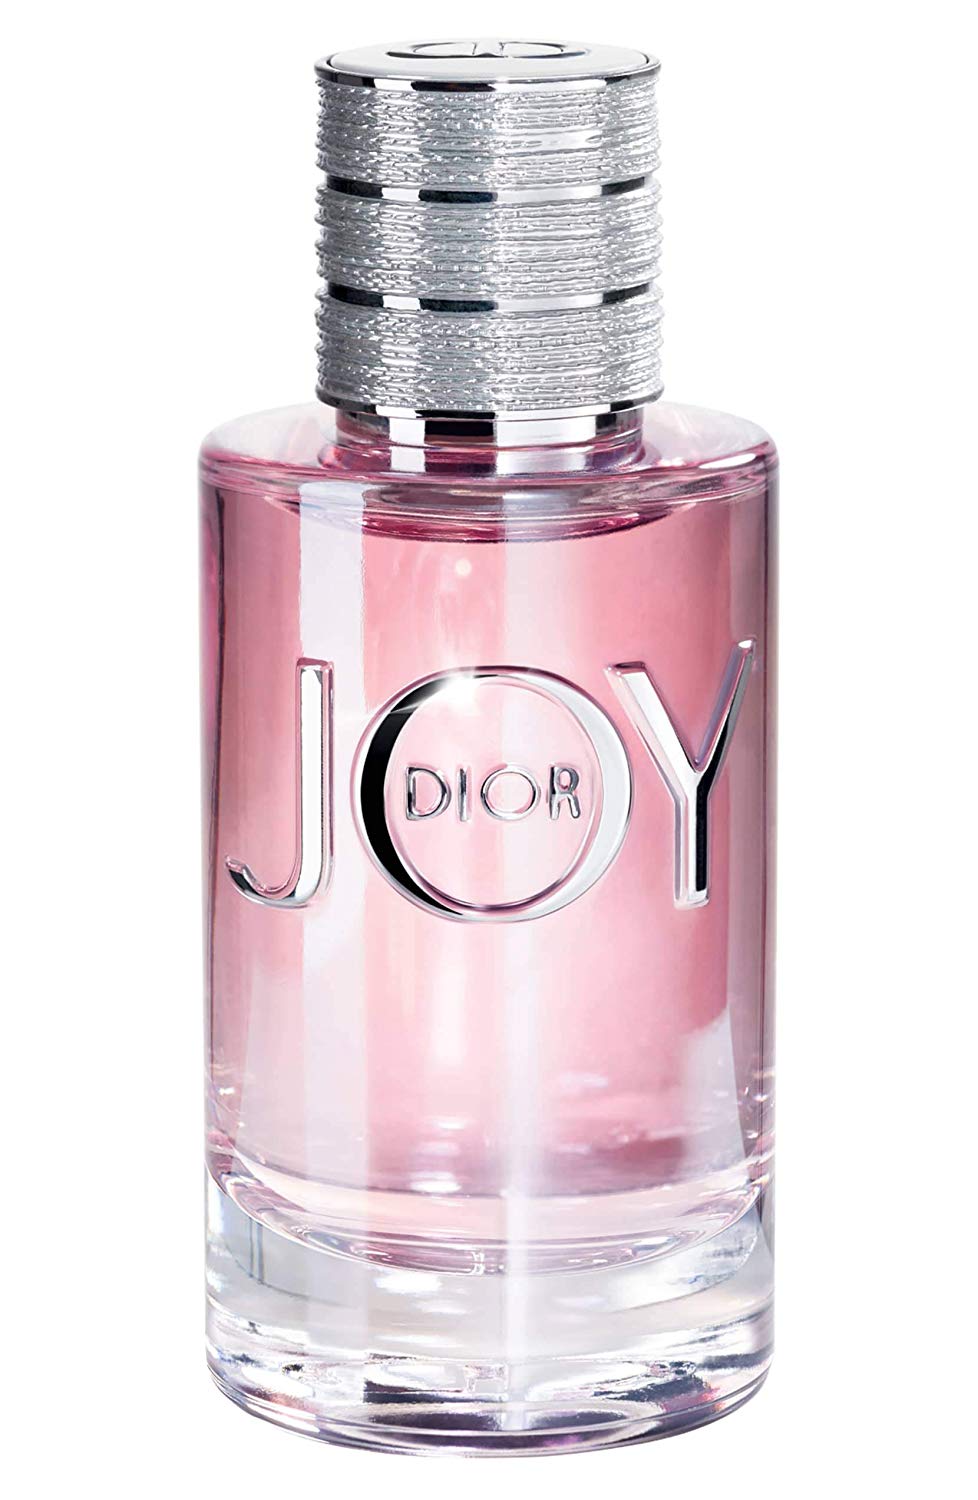 Joy Eau De Perfume - 90ml